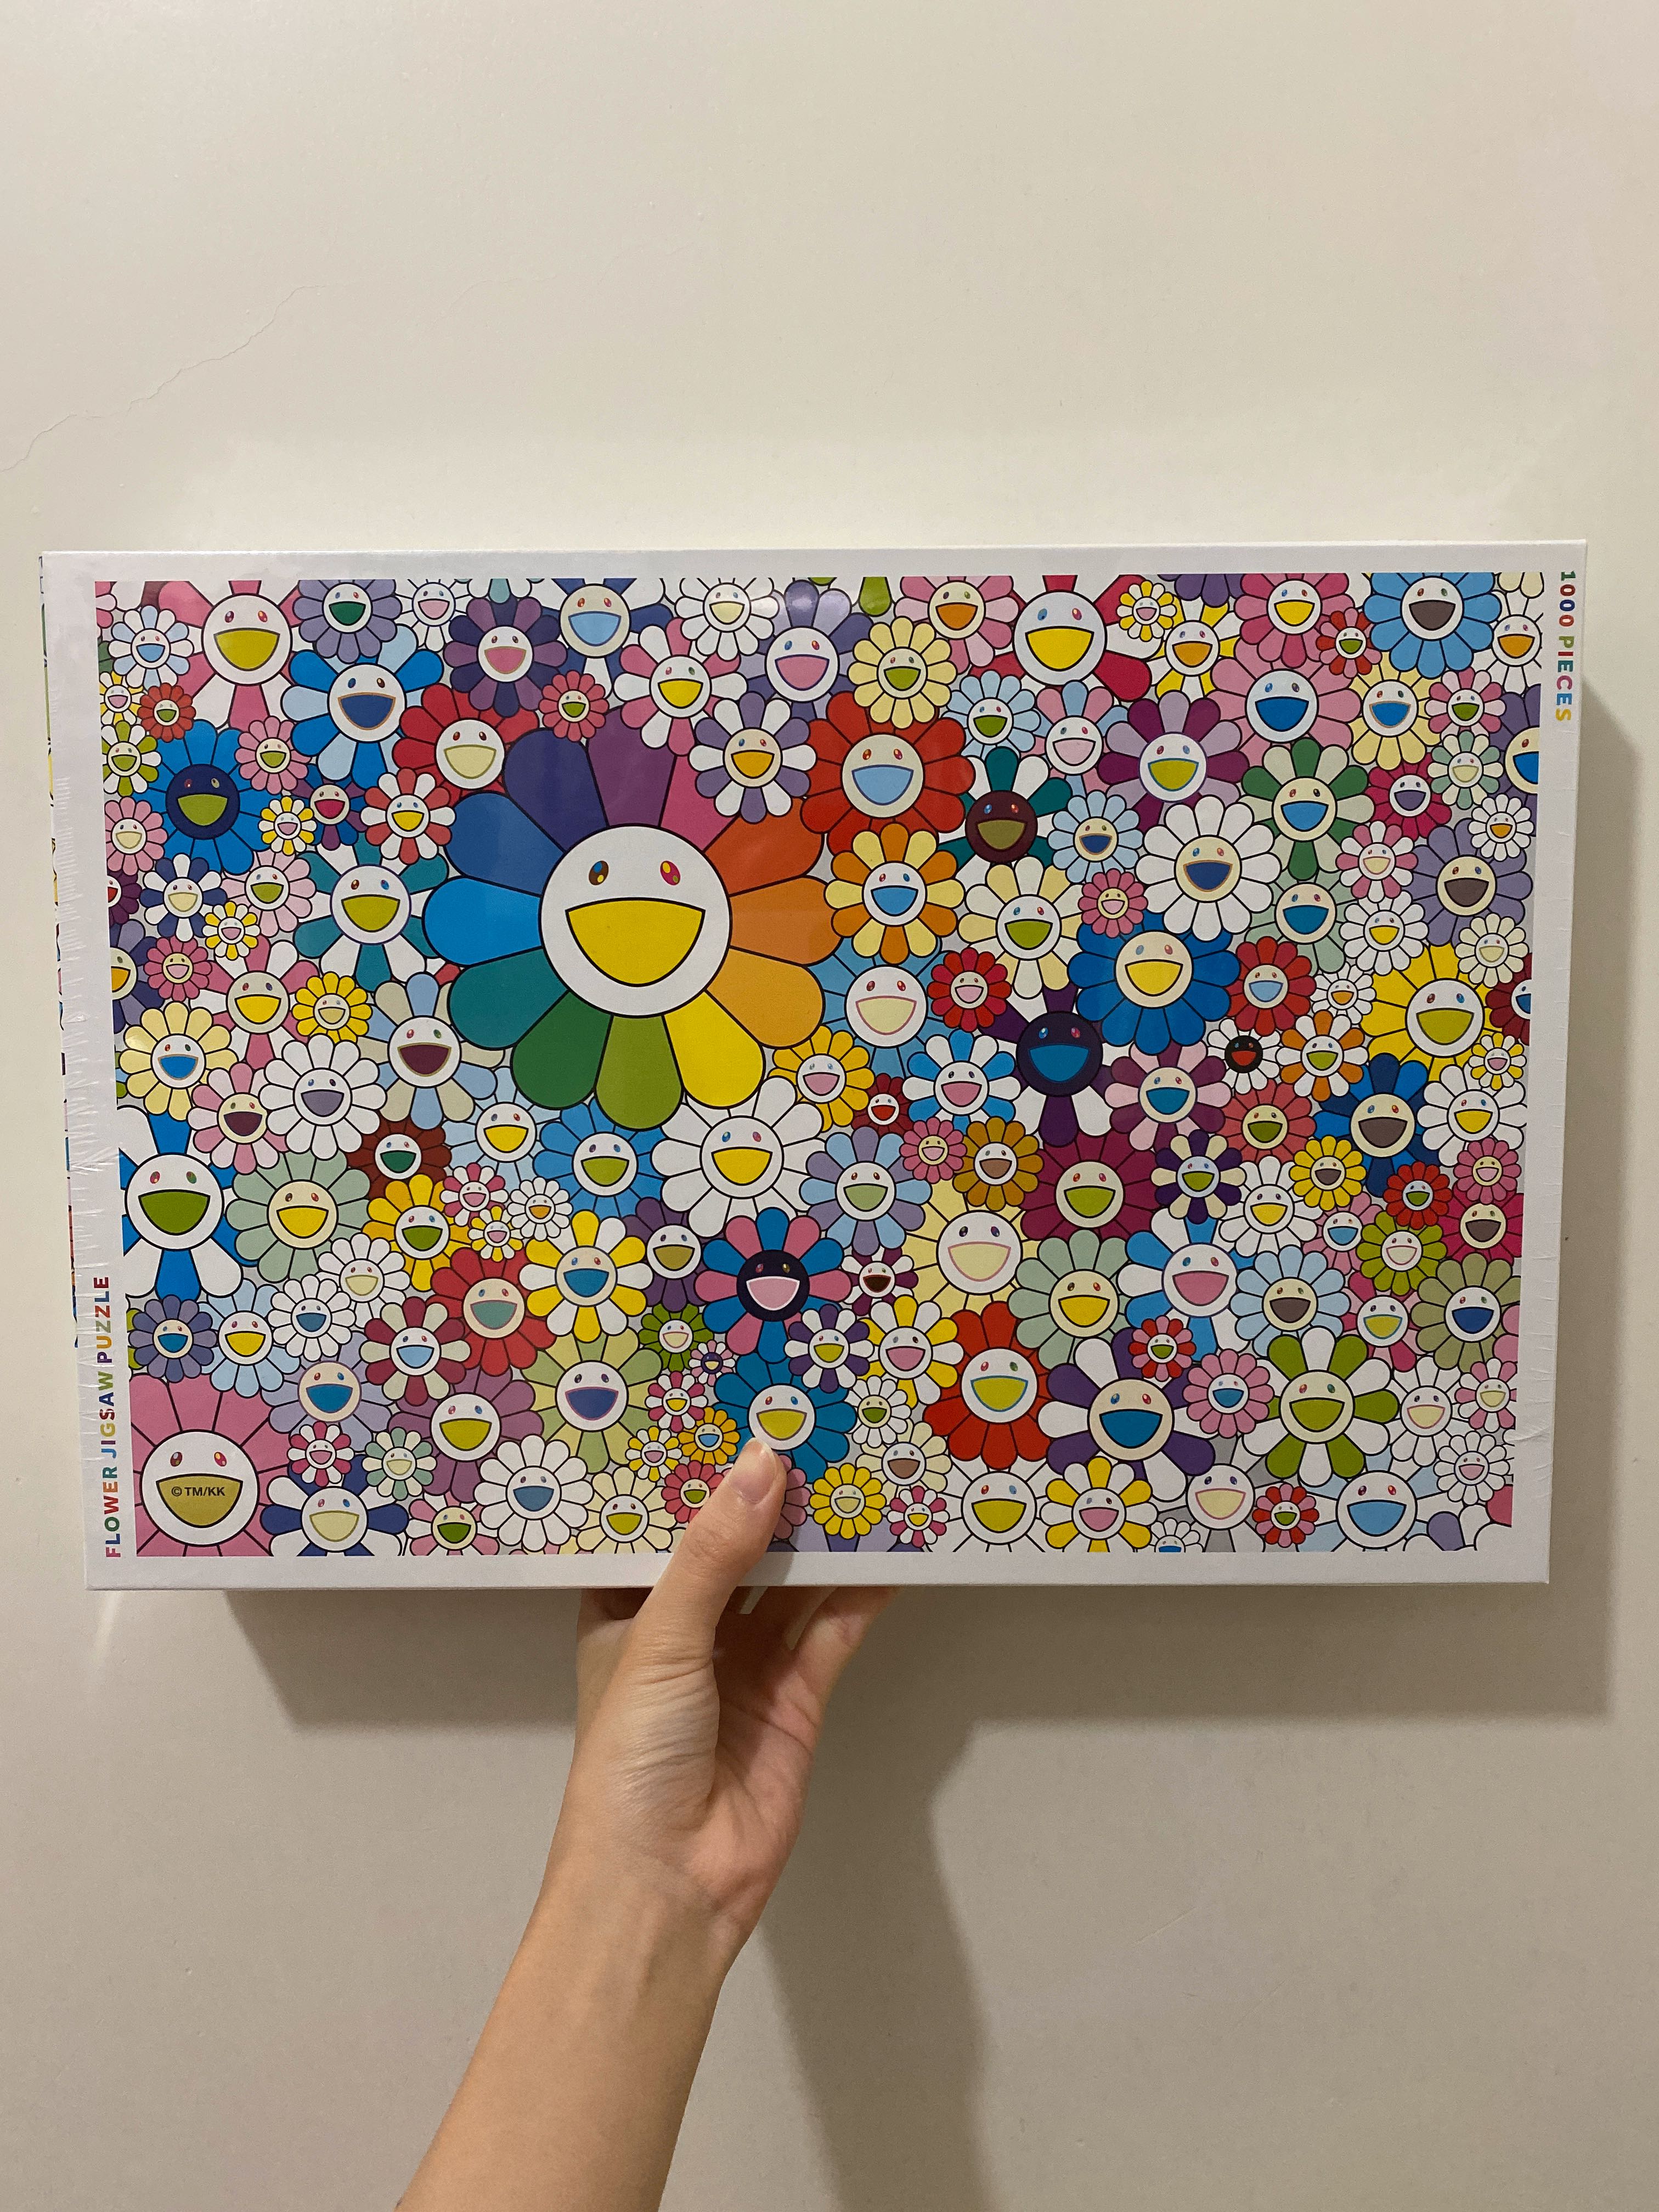 村上隆 Jigsaw Puzzle Murakami Flowers パズル | annepediatra.com.br